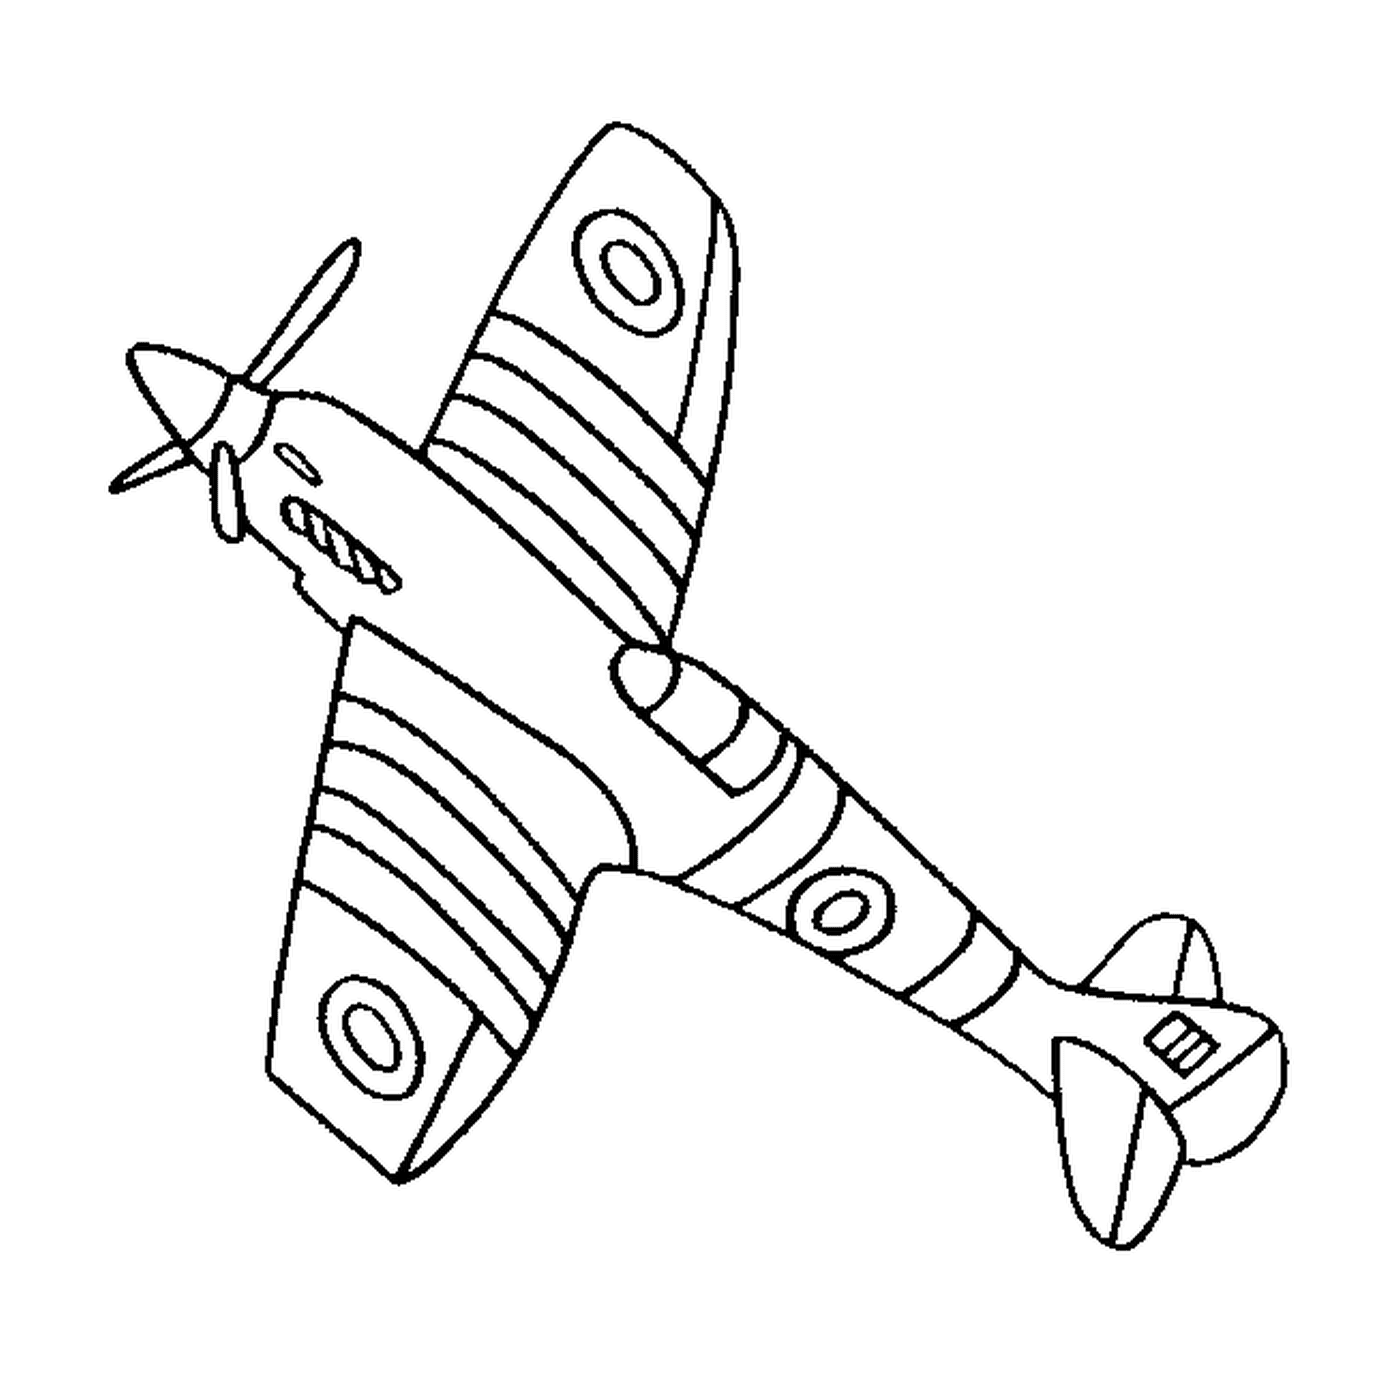  A plane is drawn 